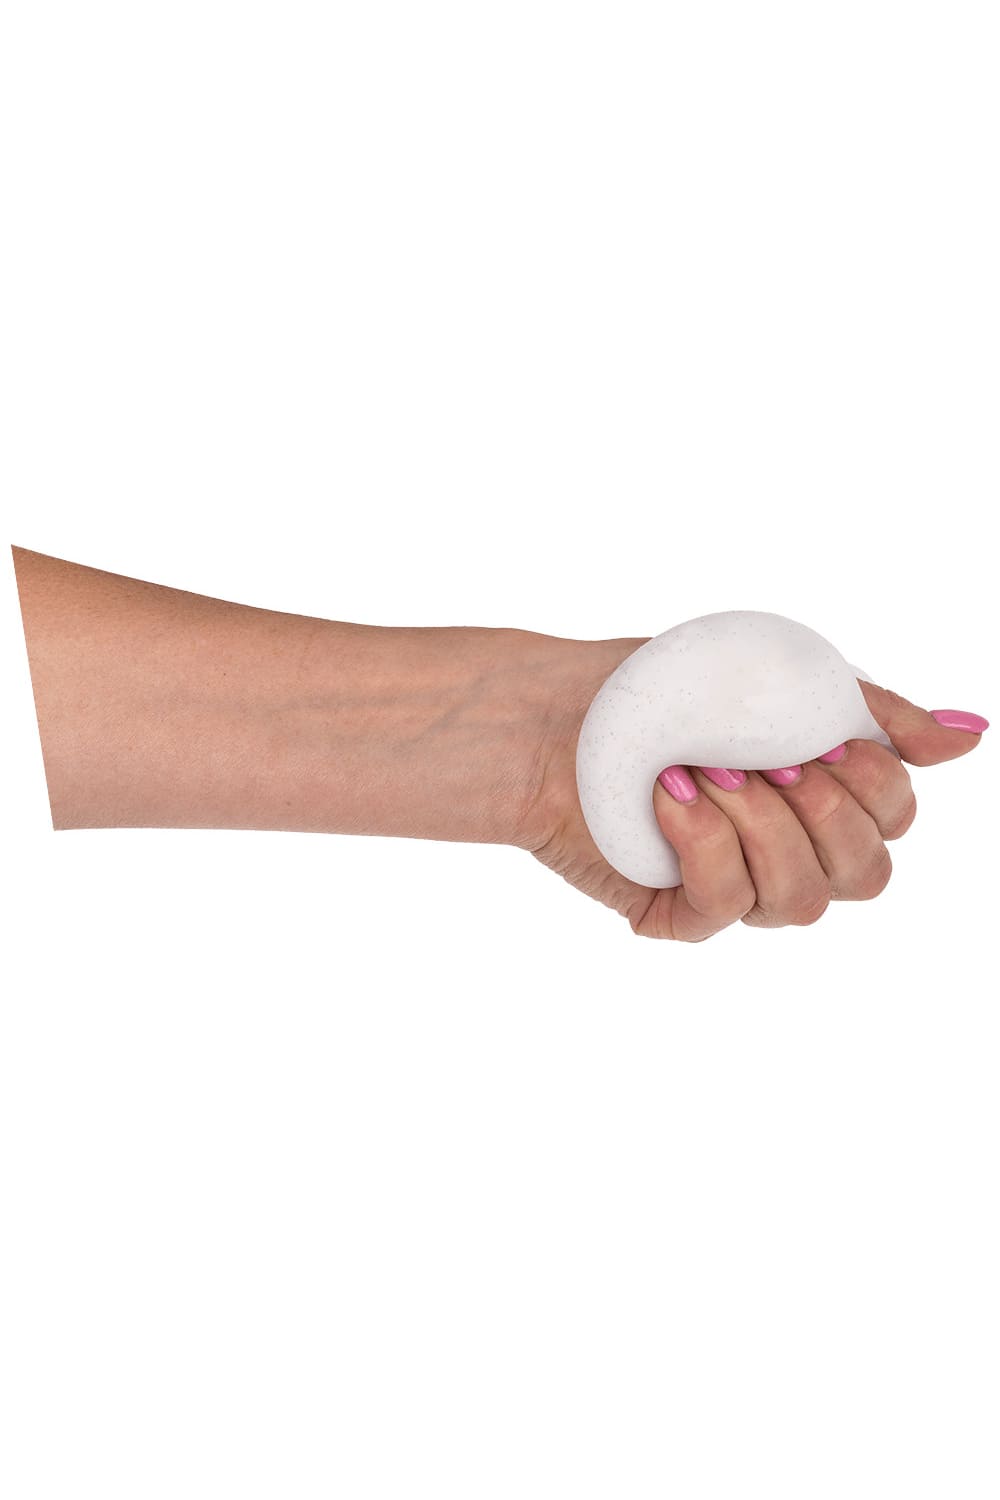 Dieser witzige Schneeball Antistress-Ball sorgt fuer Stressabbau und fuer viel Freude & Spass. Der Squeeze Ball ist ein witziges Geschenk